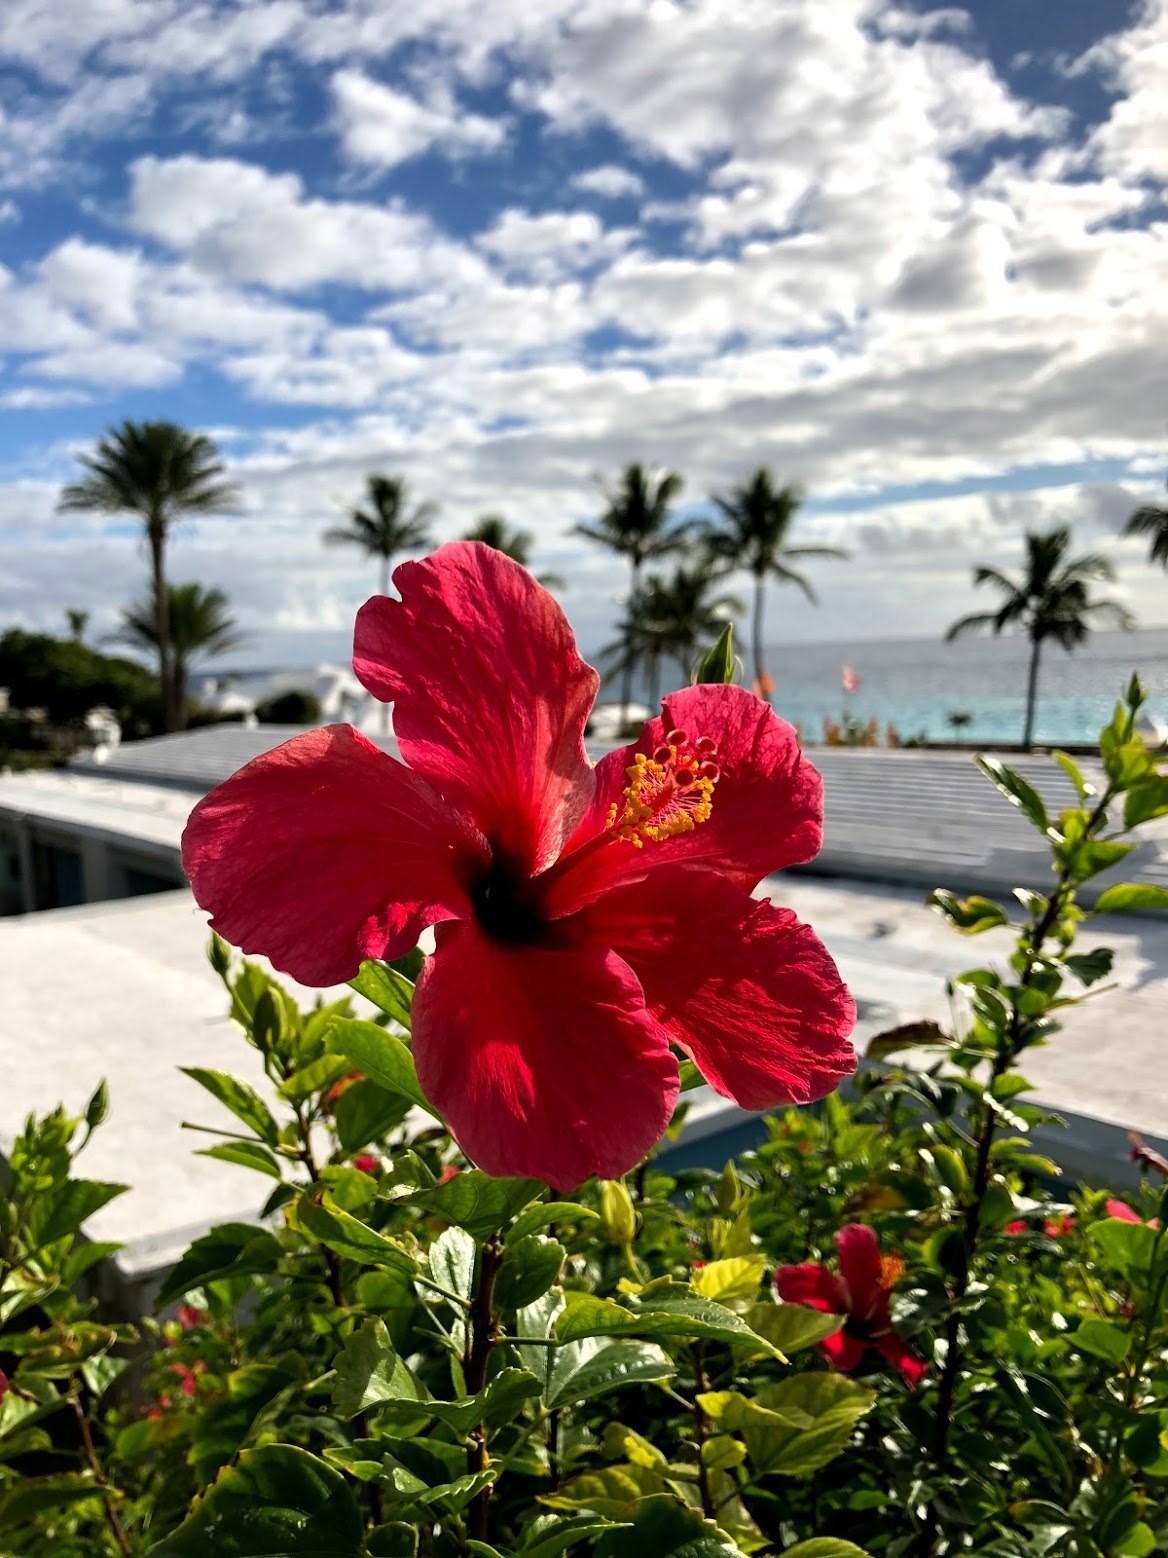 hibiscus, bermuda, the-alyst.com